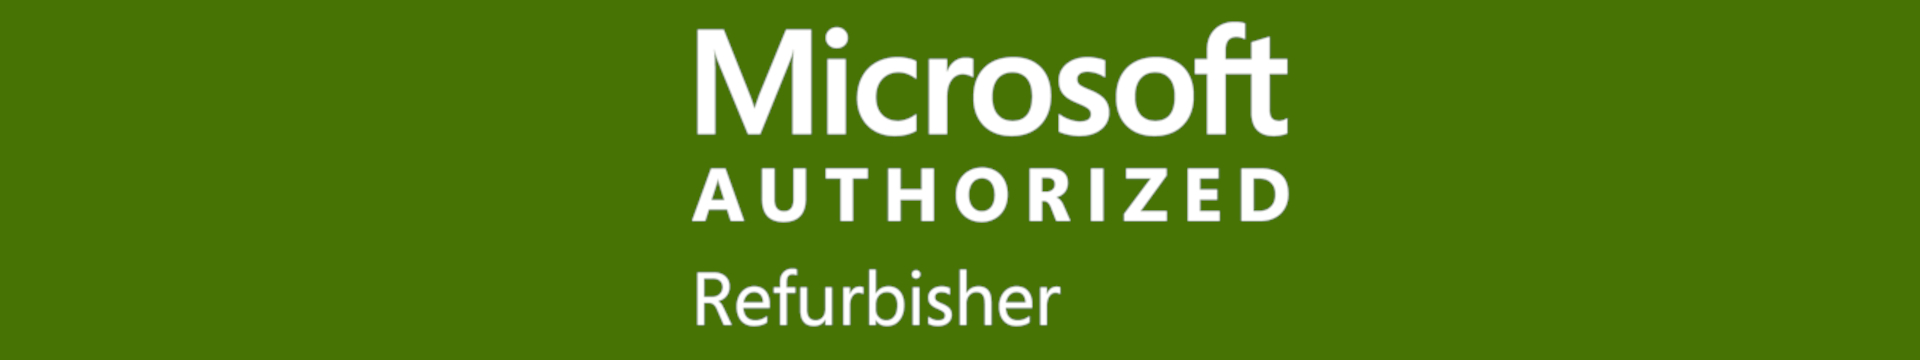 Microsoft Authorized Refurbisher (MAR) - PCSP